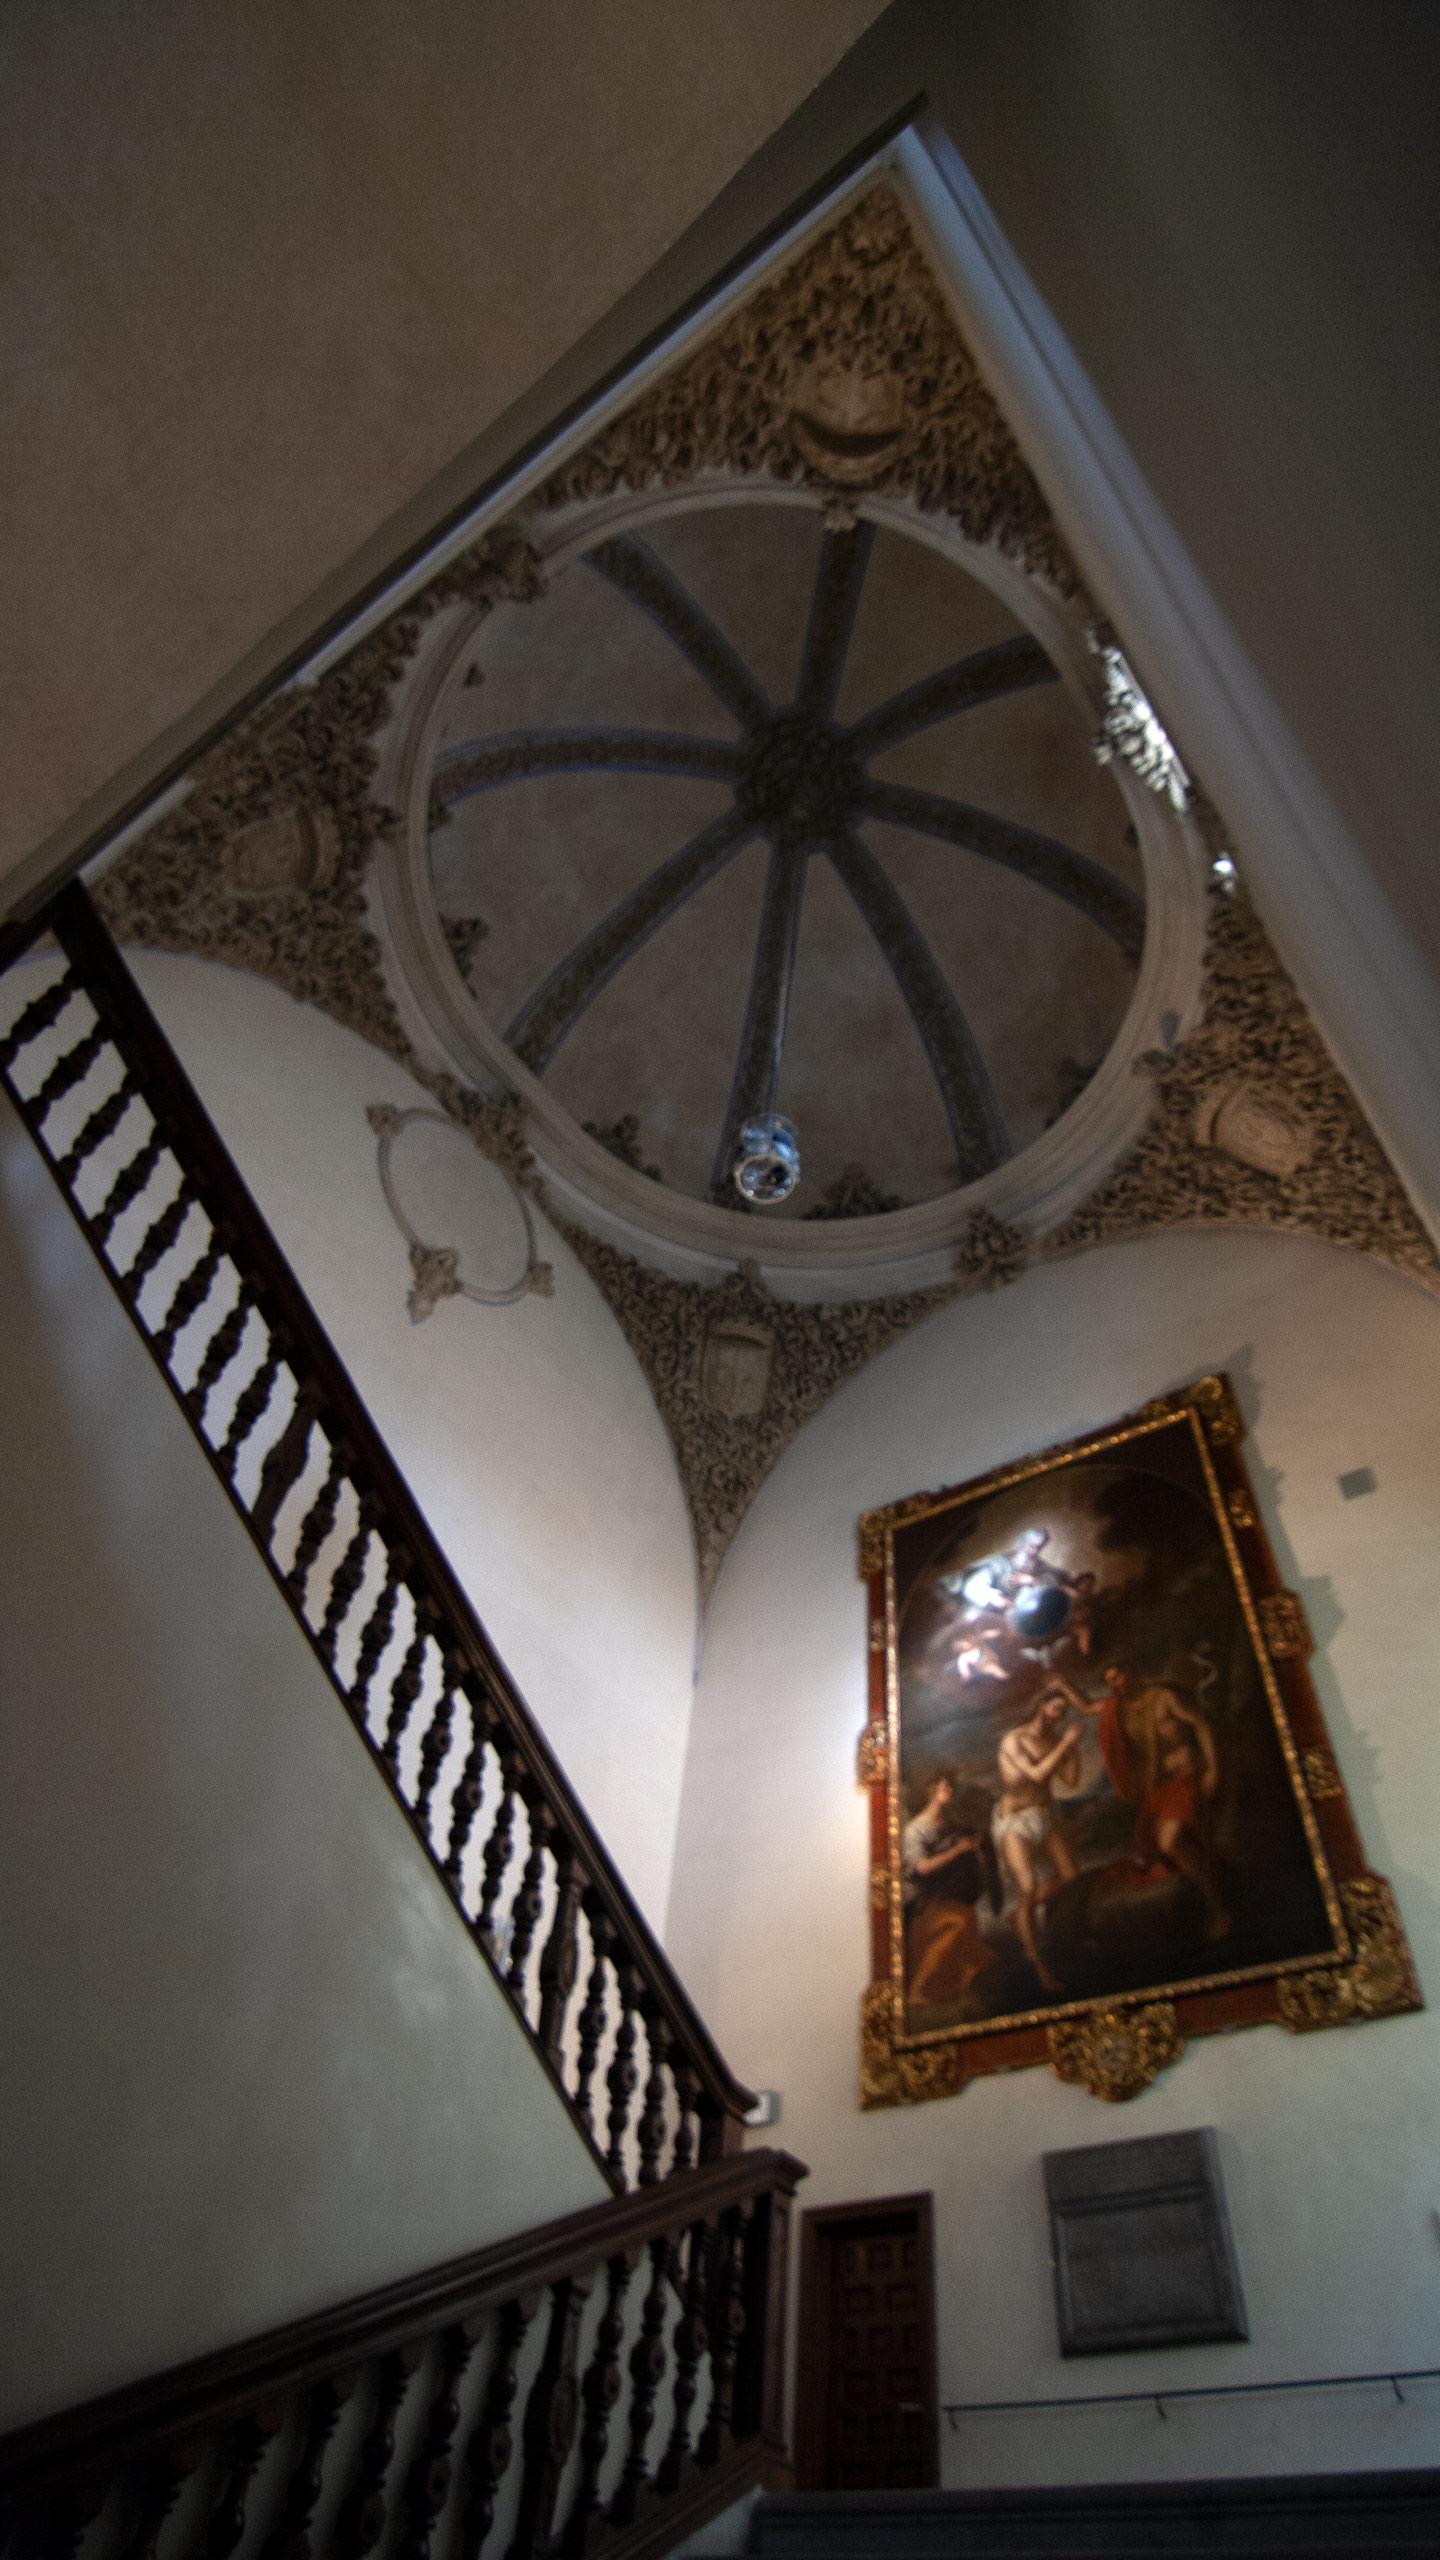 Restoration - Madrasah Palace, Stairway and vault